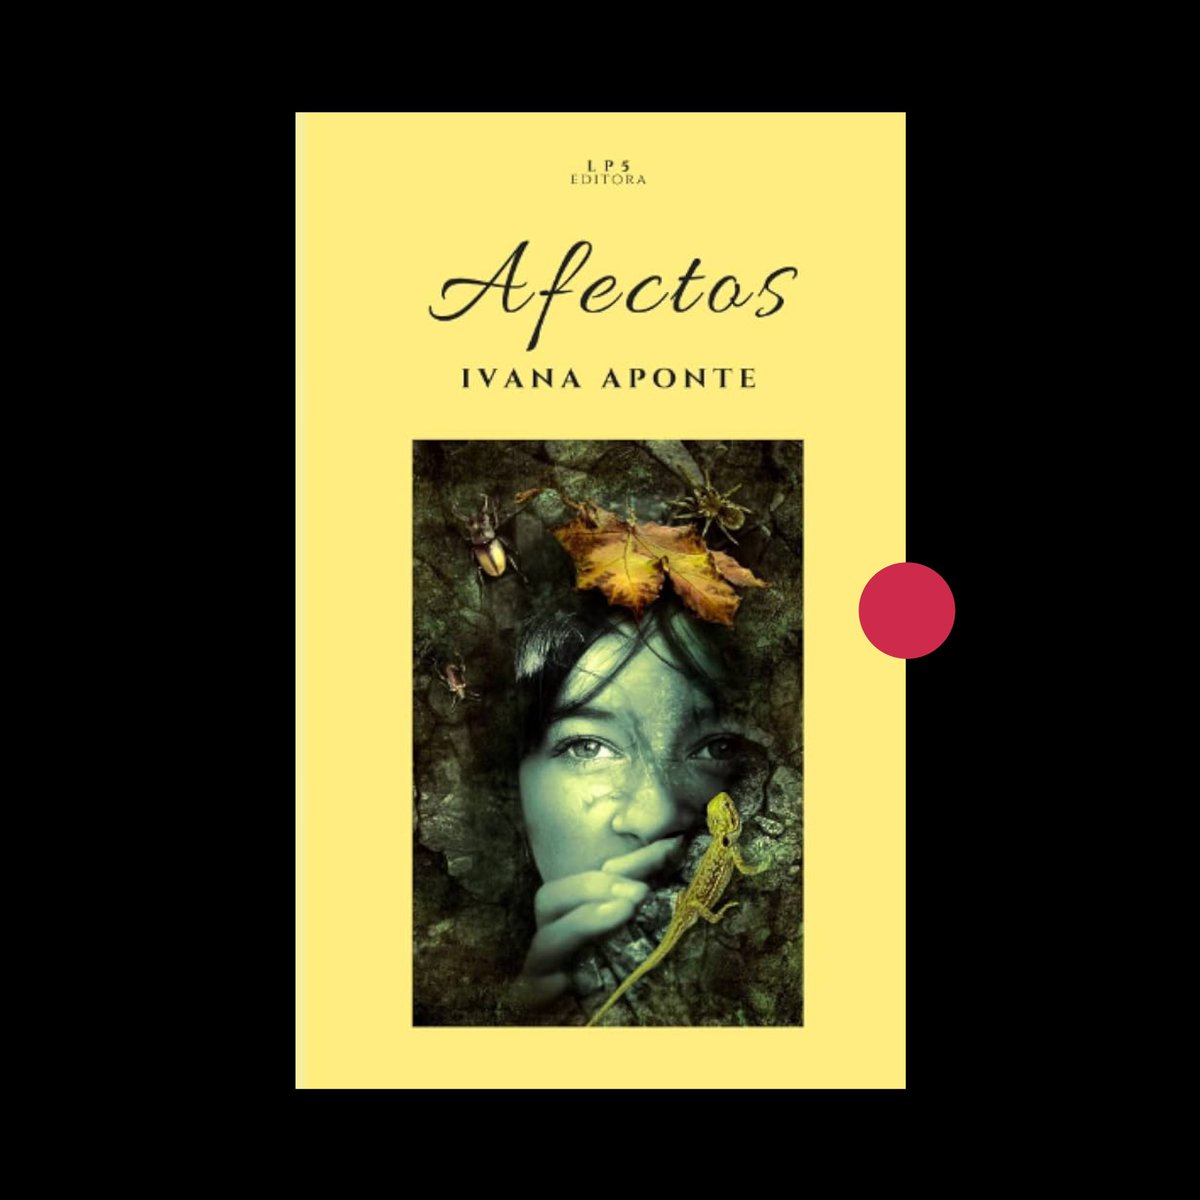 #Descarga: 

«Afectos» (LP5 Editora, 2022) de Ivana Aponte. 

#PoetasVenezolanas